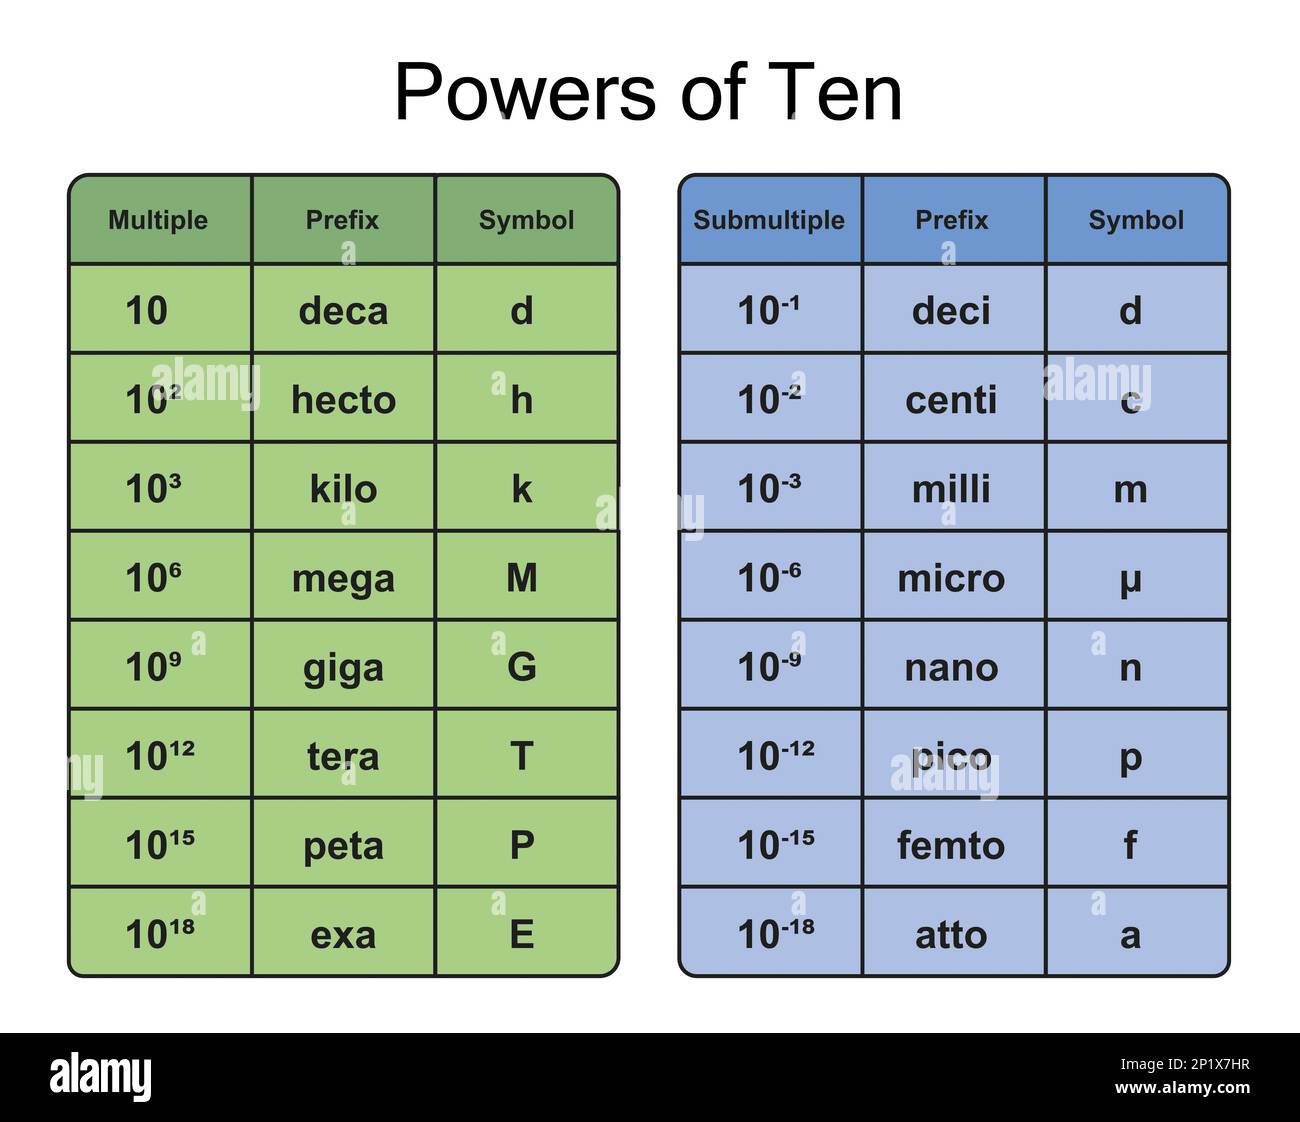 Powers of ten, illustration Stock Photo